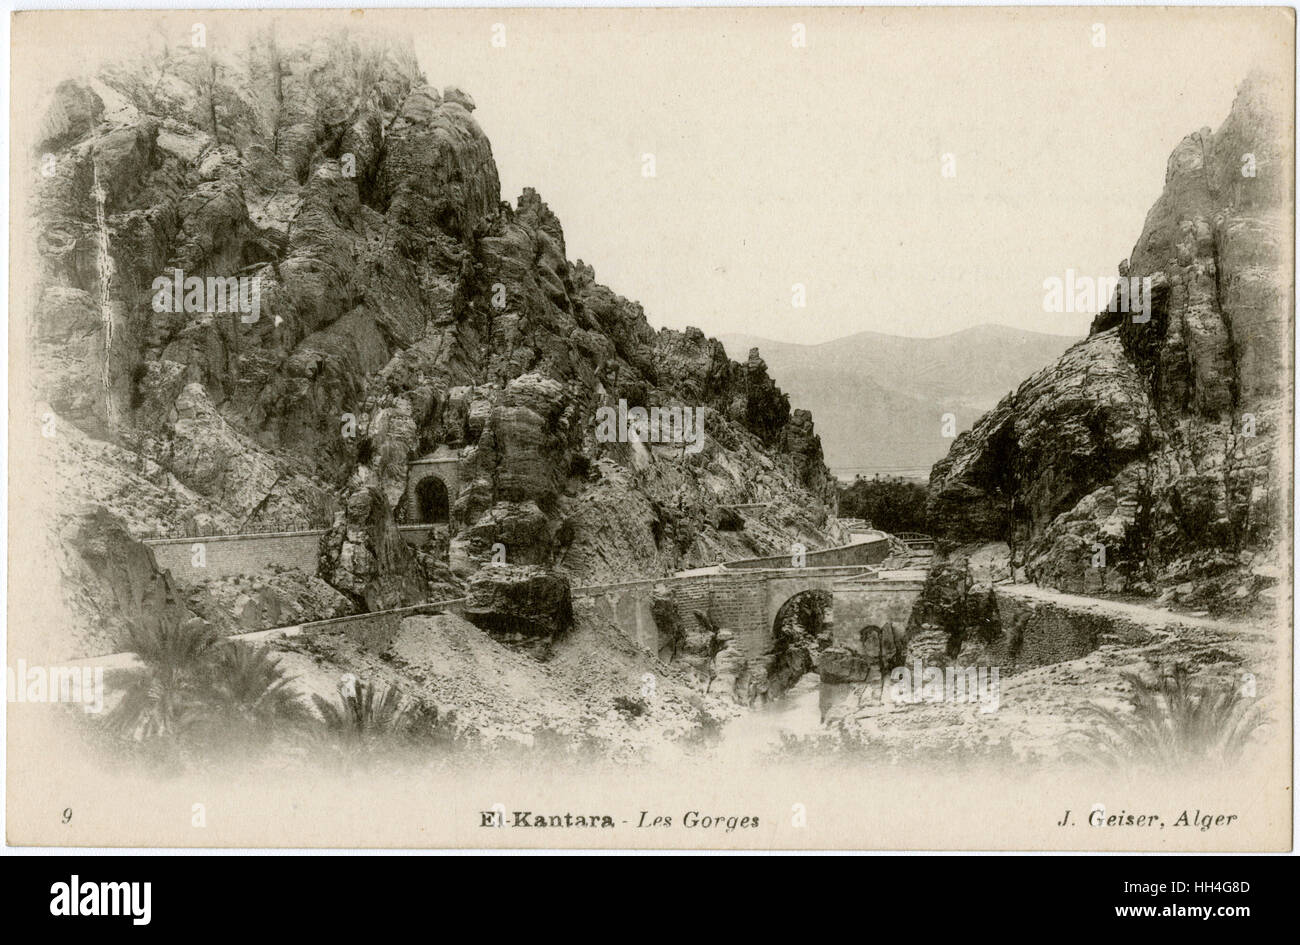 The 'Red' Village of El-Kantara, Algeria - Road through the Gorges Stock Photo